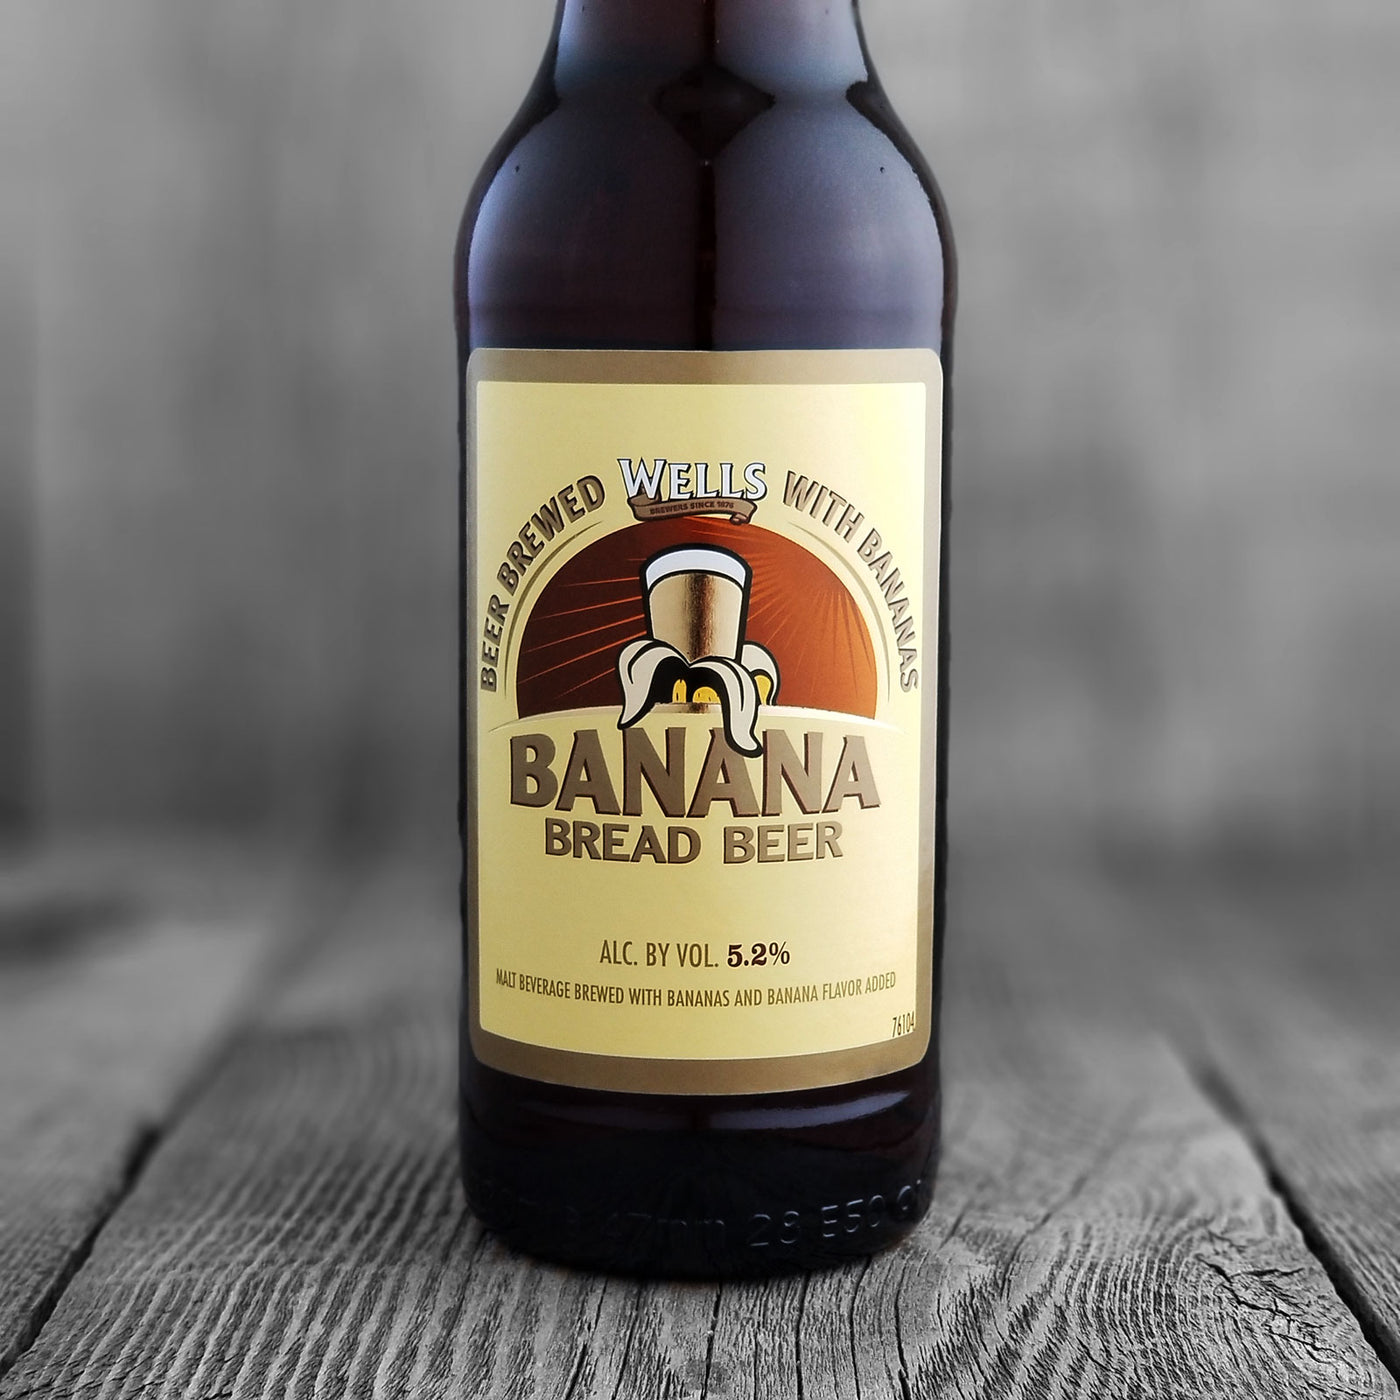 Wells / eagle brewery Banana Bread Beer